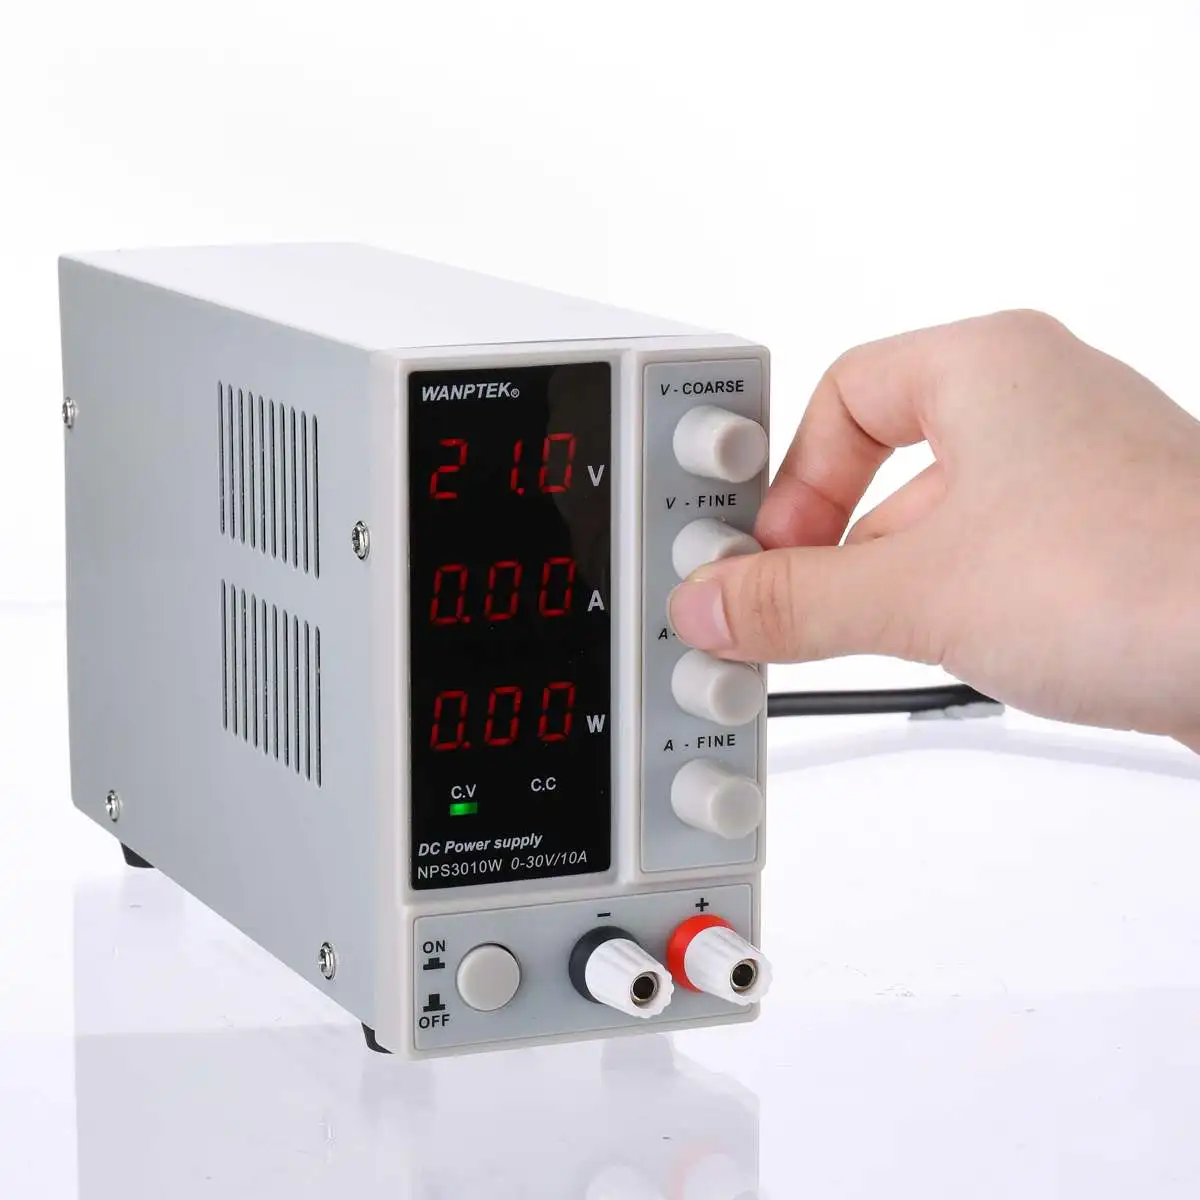 NPS3010W Minleaf Power Supply DC 0-30V 0-10A Switching Adjust Digital L 